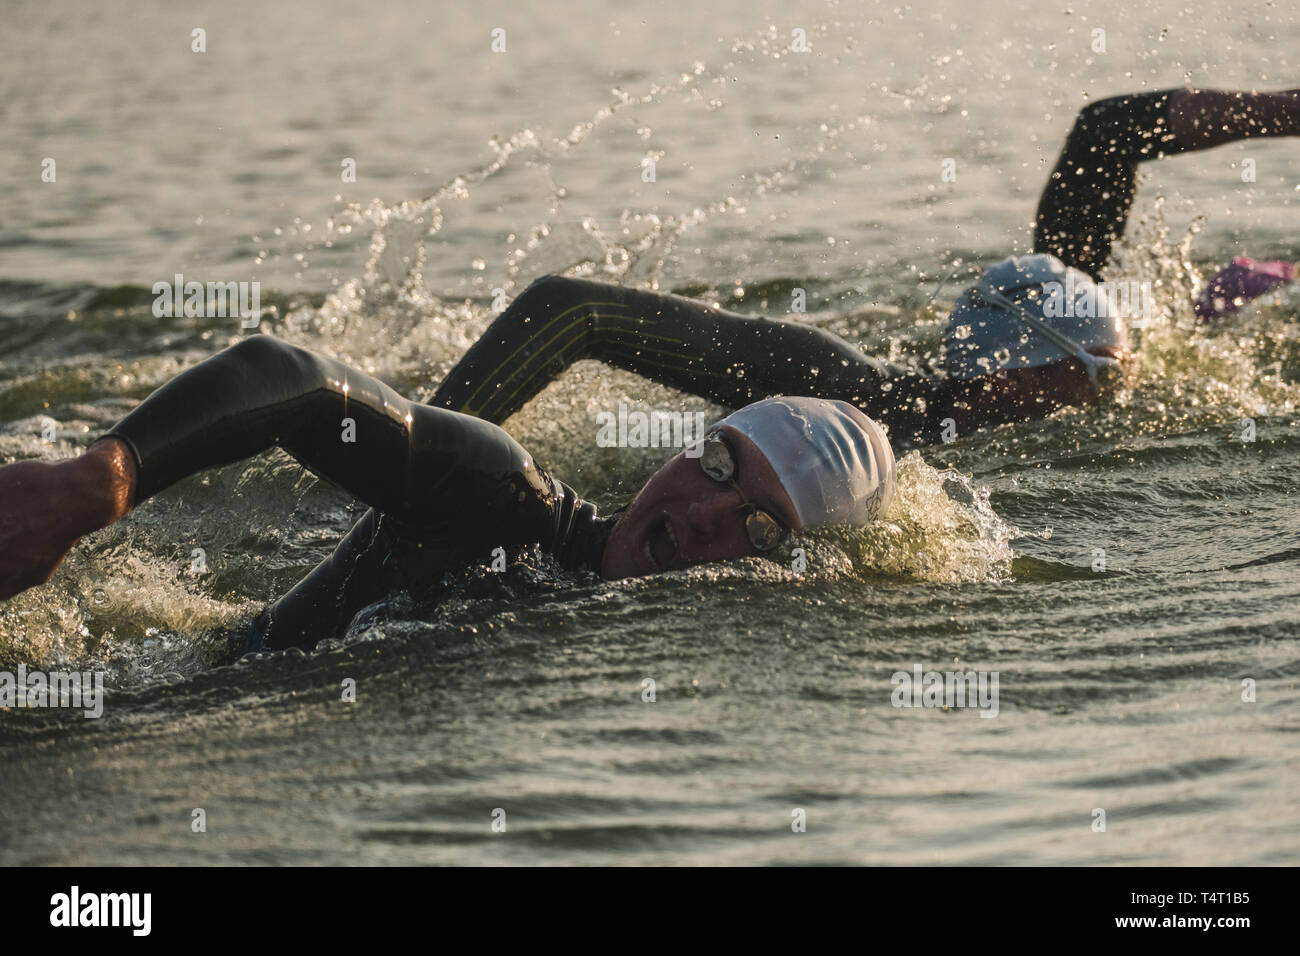 Triatleti nuotare all'avvio dell'Ironman Triathlon a Kiev, Ucraina Foto Stock